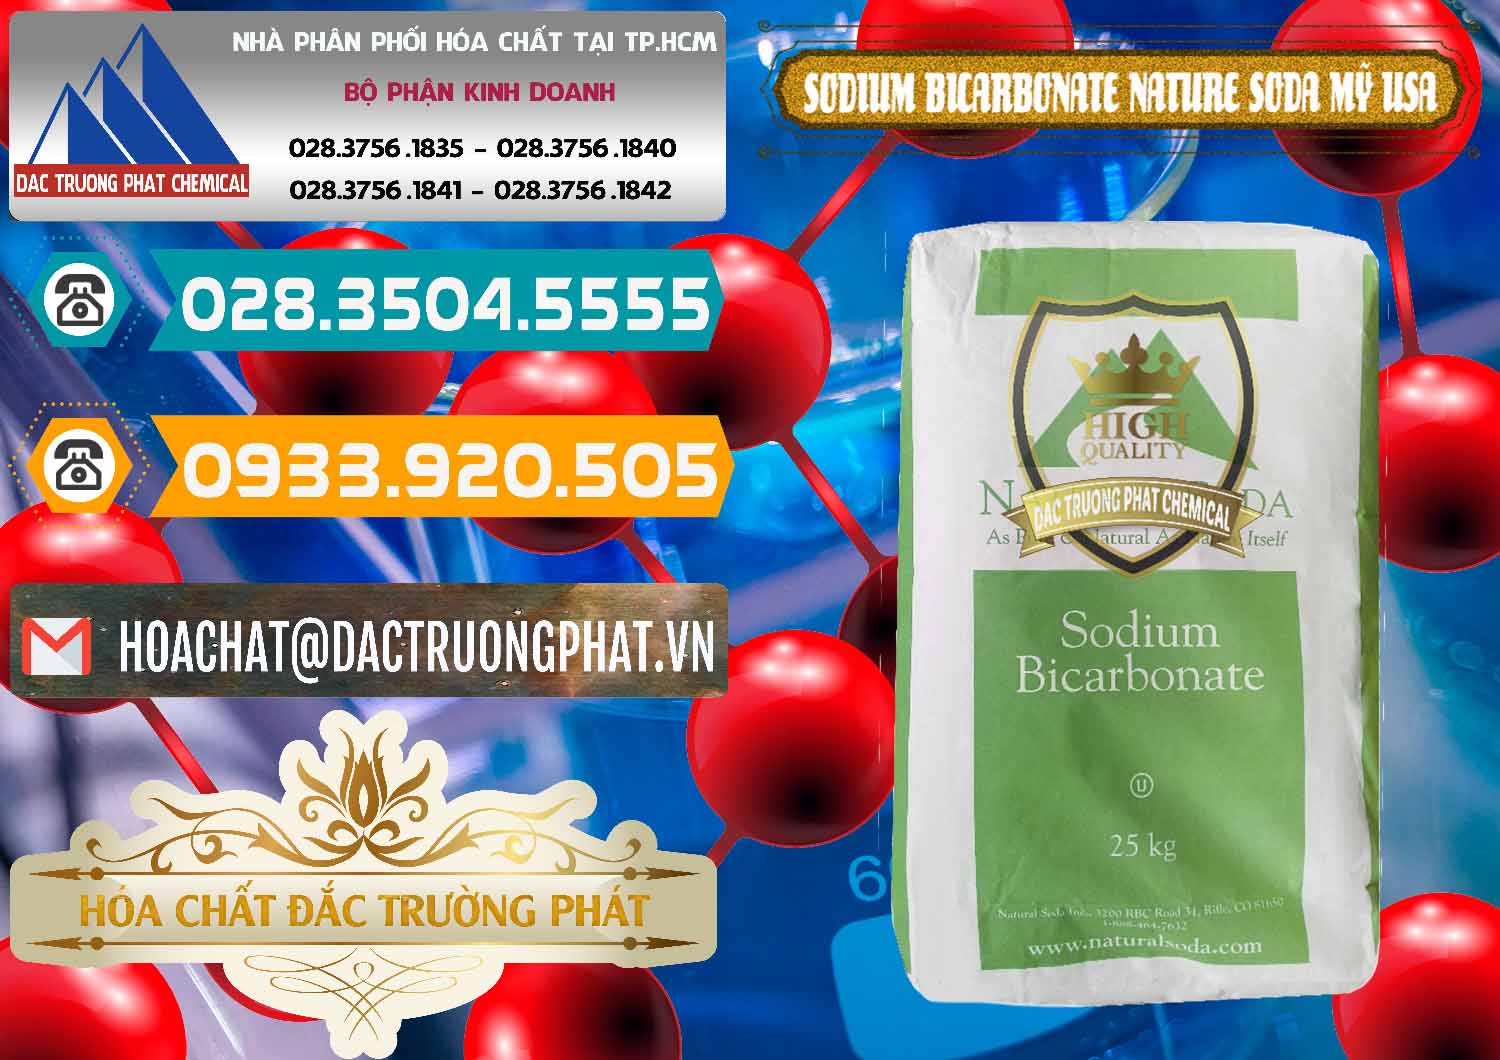 Phân phối & bán Sodium Bicarbonate – Bicar NaHCO3 Food Grade Nature Soda Mỹ USA - 0256 - Công ty chuyên bán ( phân phối ) hóa chất tại TP.HCM - congtyhoachat.vn